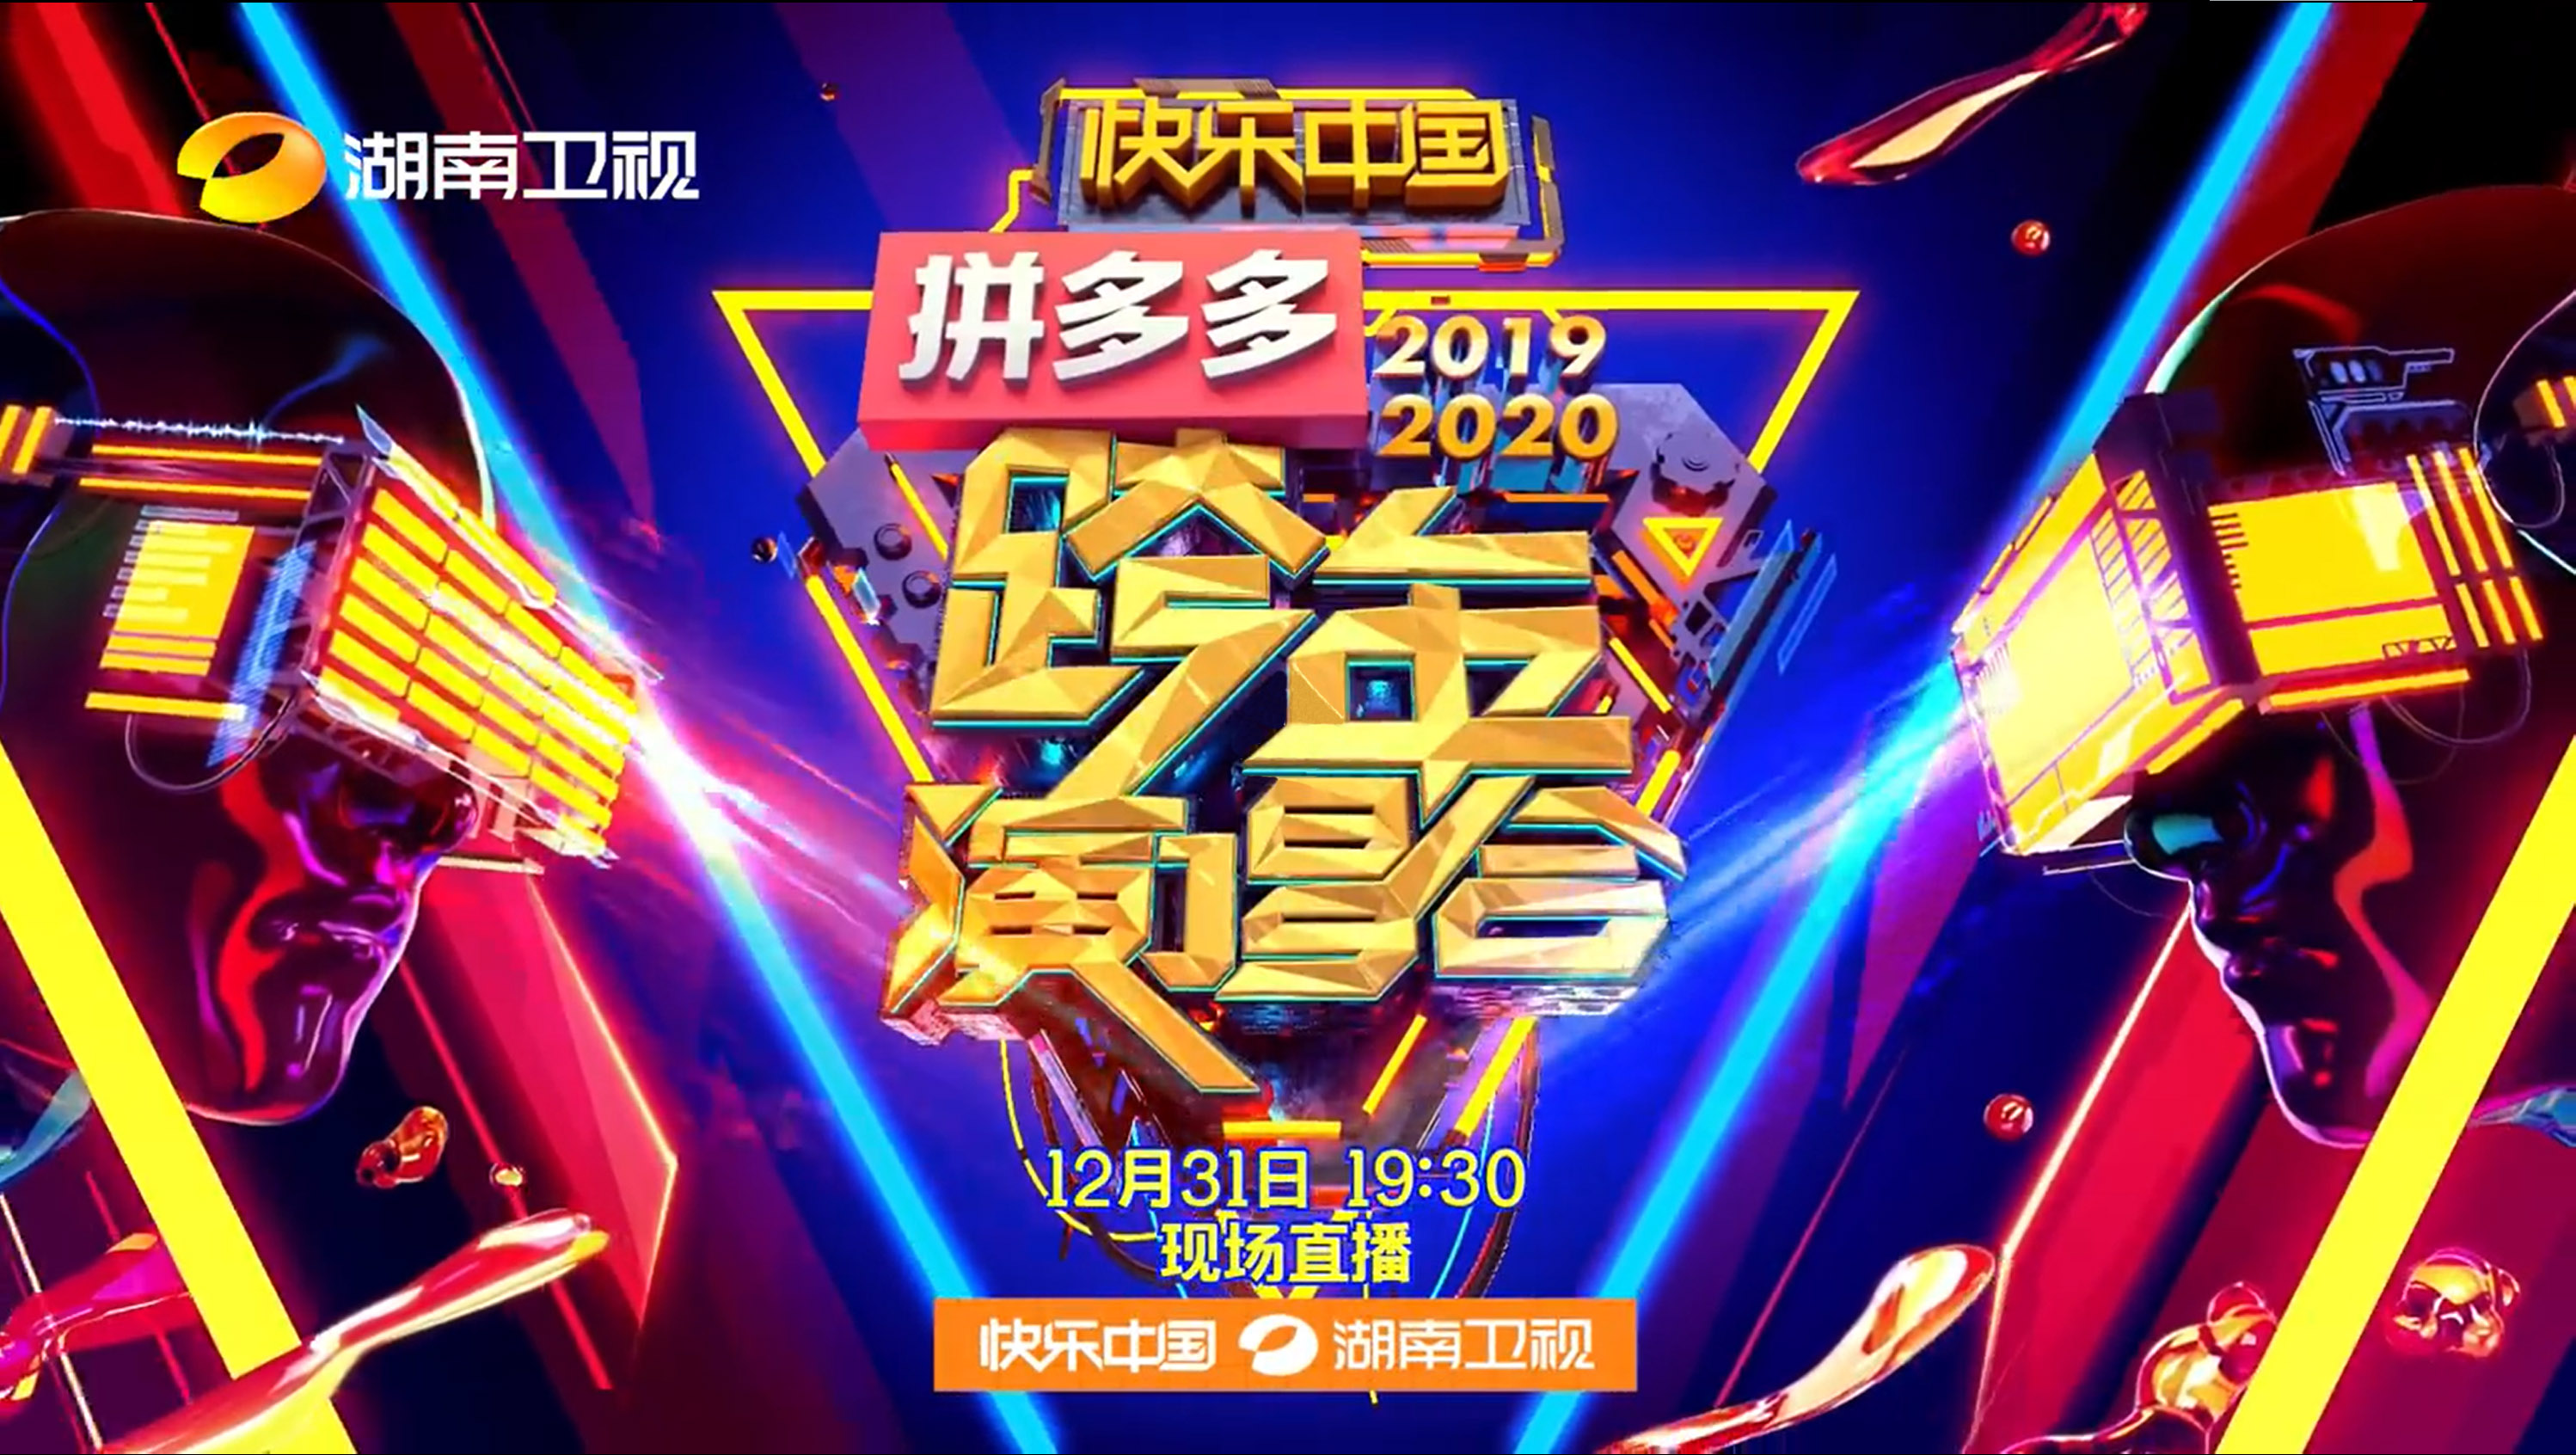 HunanTV Poster